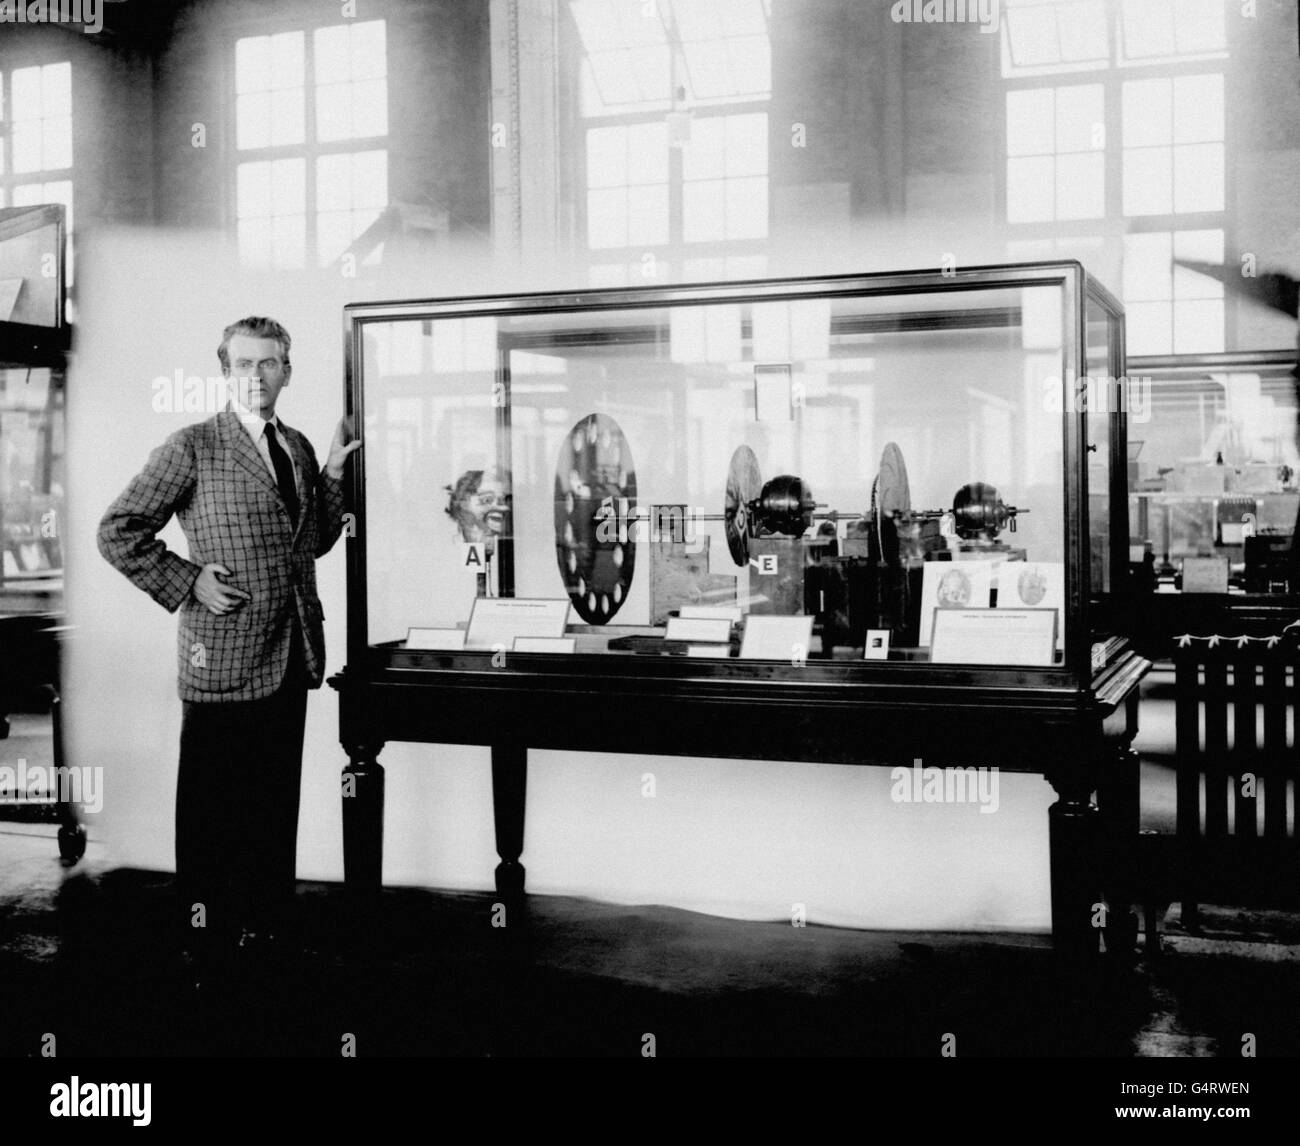 UM AUGUST 1926 JOHN LOGIE BAIRD, DER PIONIER DES FERNSEHENS, MIT SEINEM ERSTEN FERNSEHGERÄT, DAS ER DEM WISSENSCHAFTSMUSEUM VORSTELLTE. Stockfoto